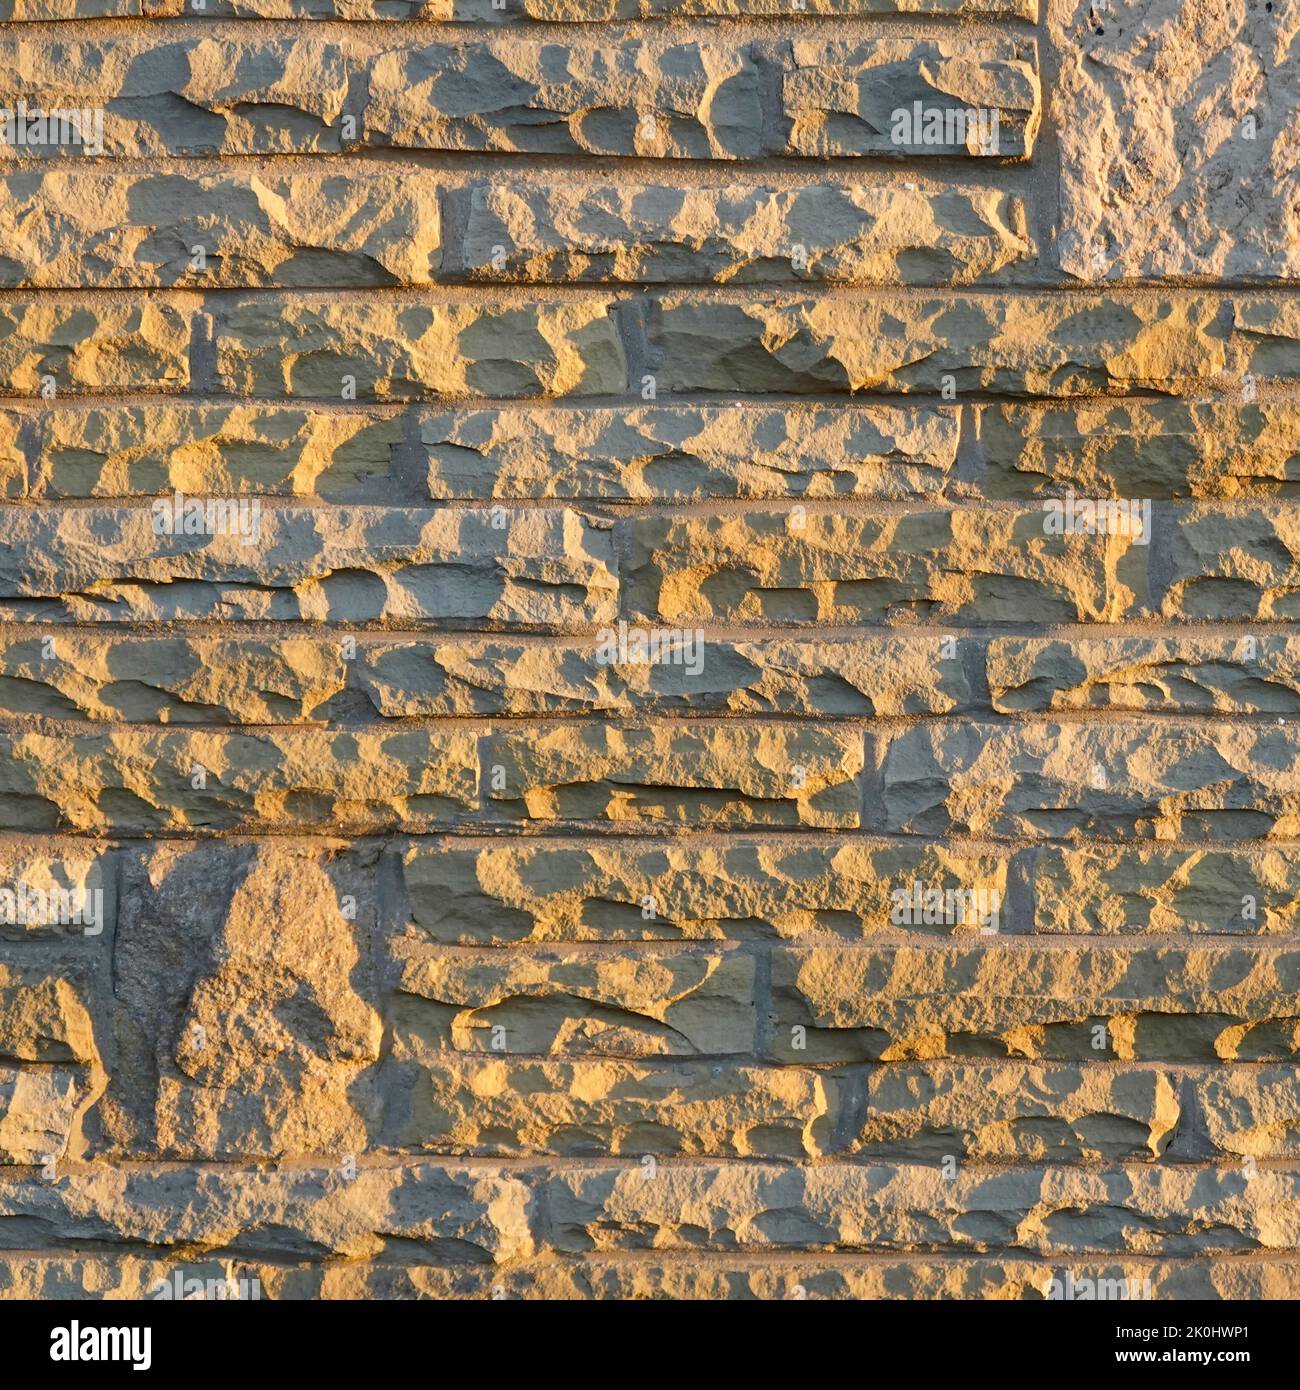 Soleil sur des blocs de pierre naturelle de York coupés et vêtus de dalles Londres redondantes réutilisées dans la peau externe de la maison mur cavité Essex Angleterre Royaume-Uni Banque D'Images